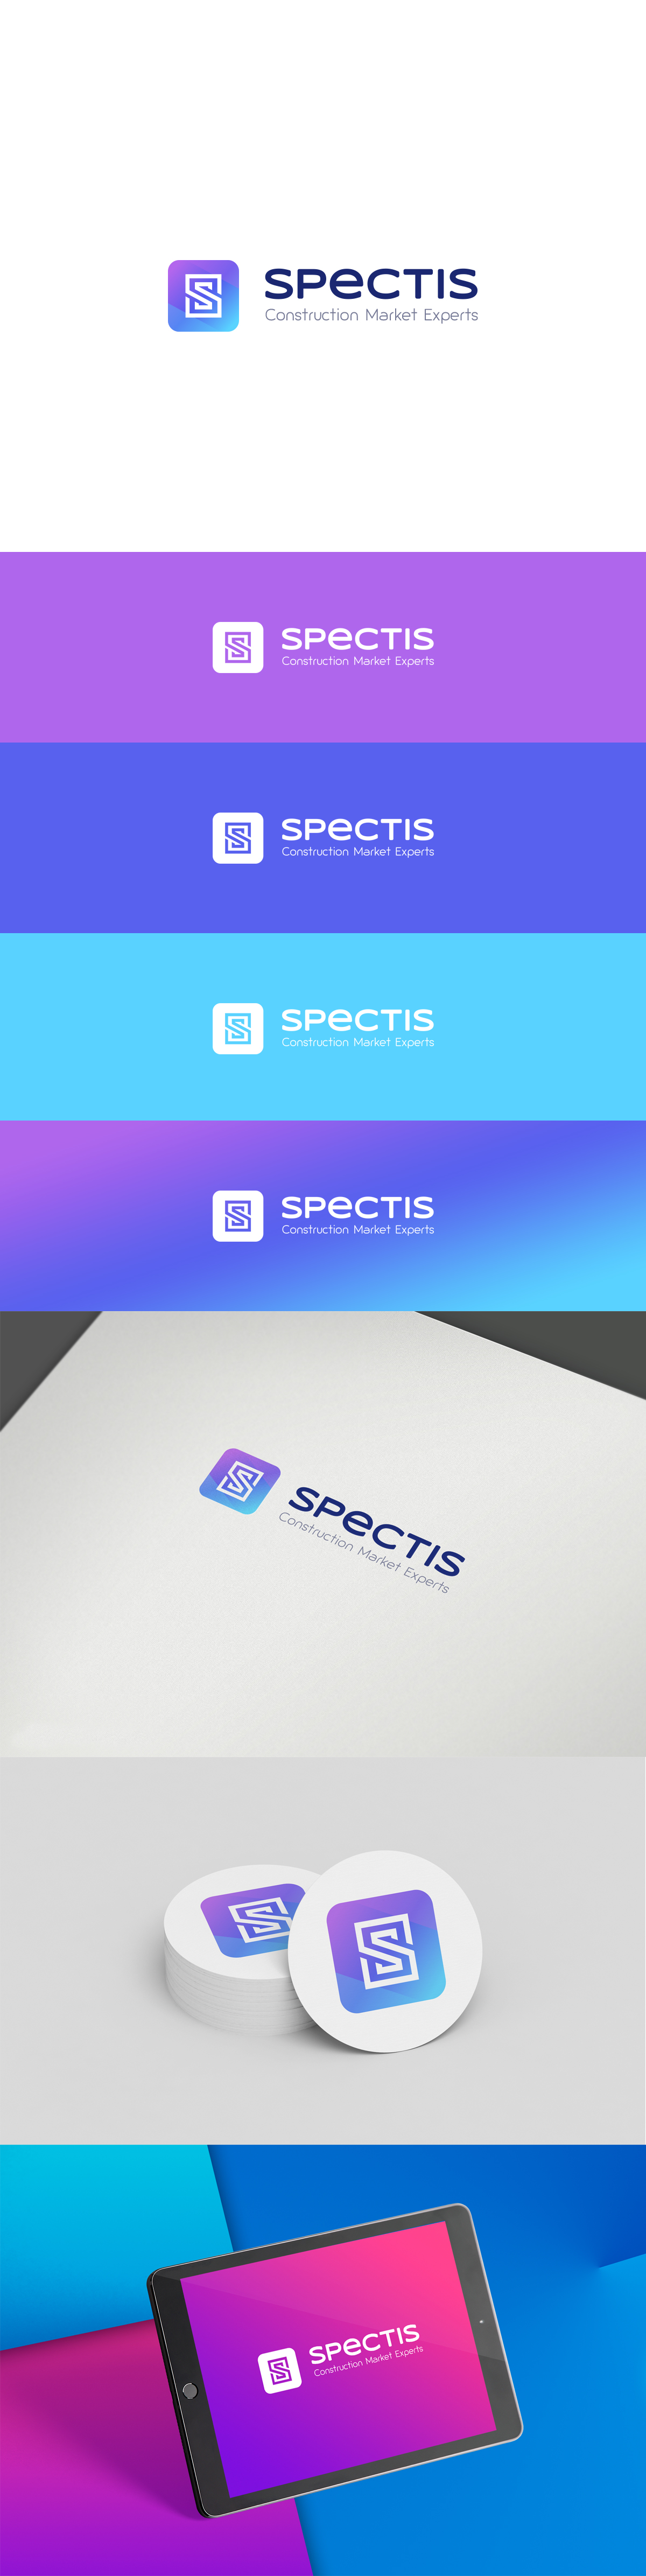 spectis_logo.jpg